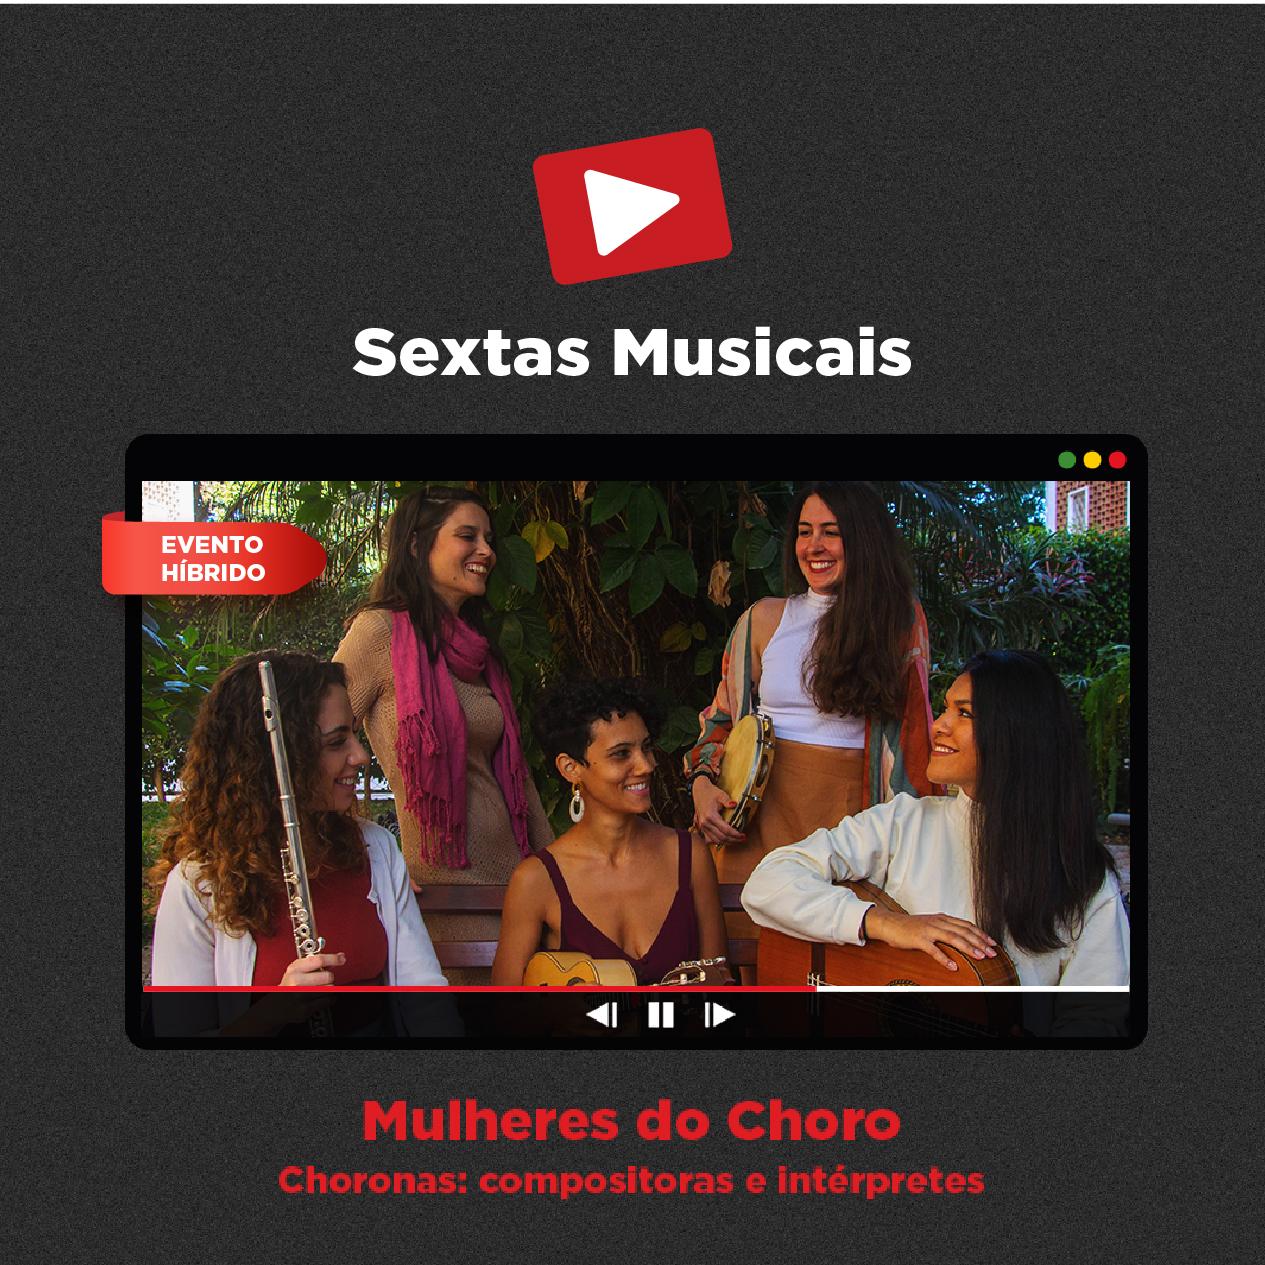 Sextas Musicais - Live Streaming: Mulheres do Choro